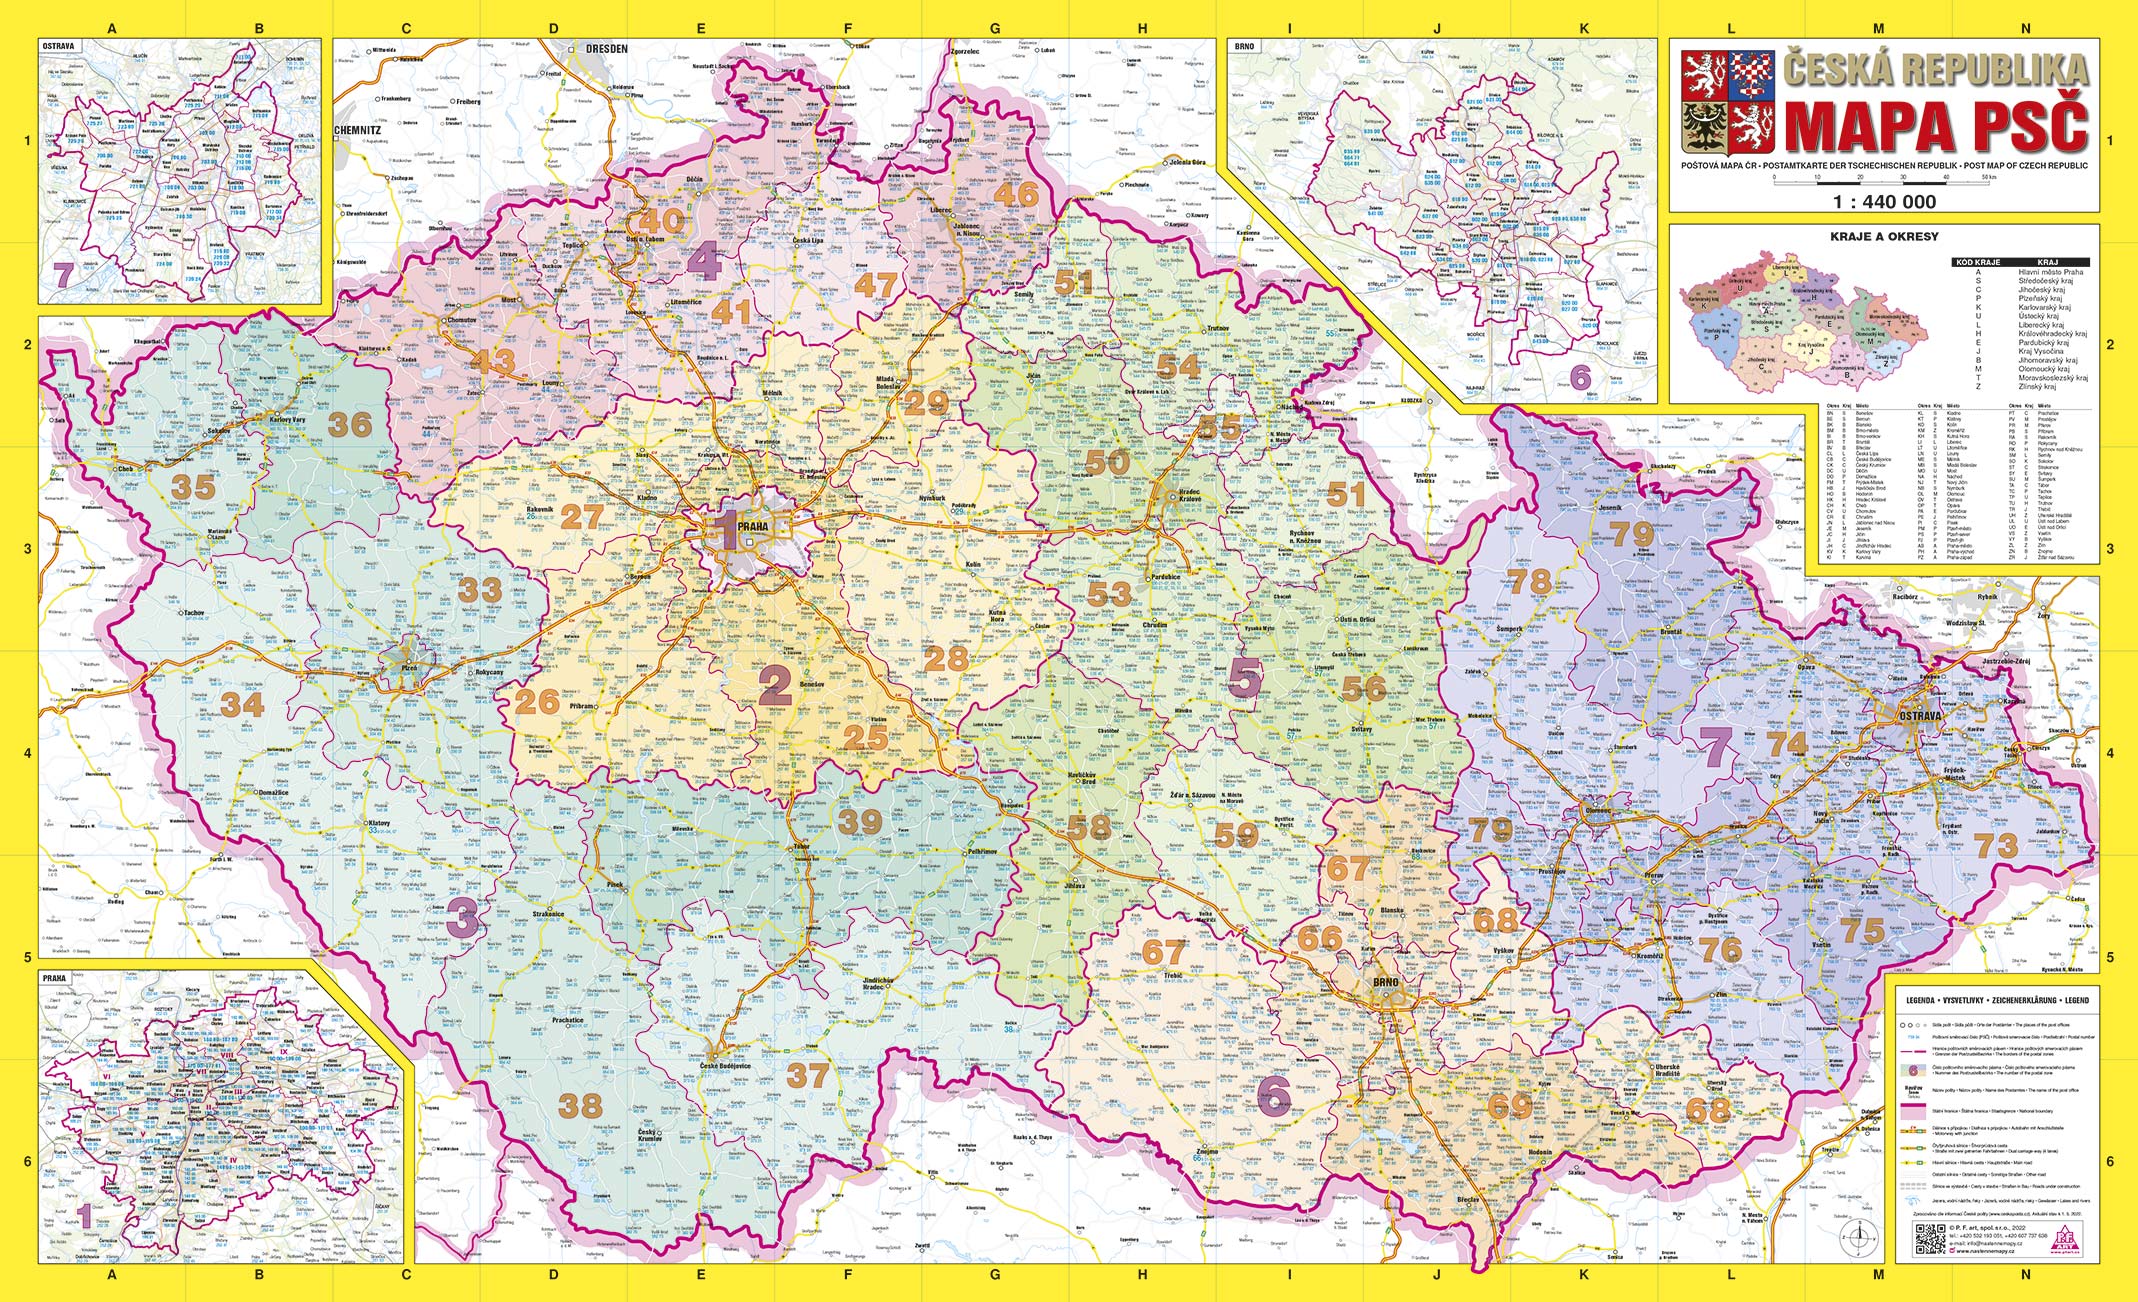 Nástěnná mapa PSČ České republiky PF440 




